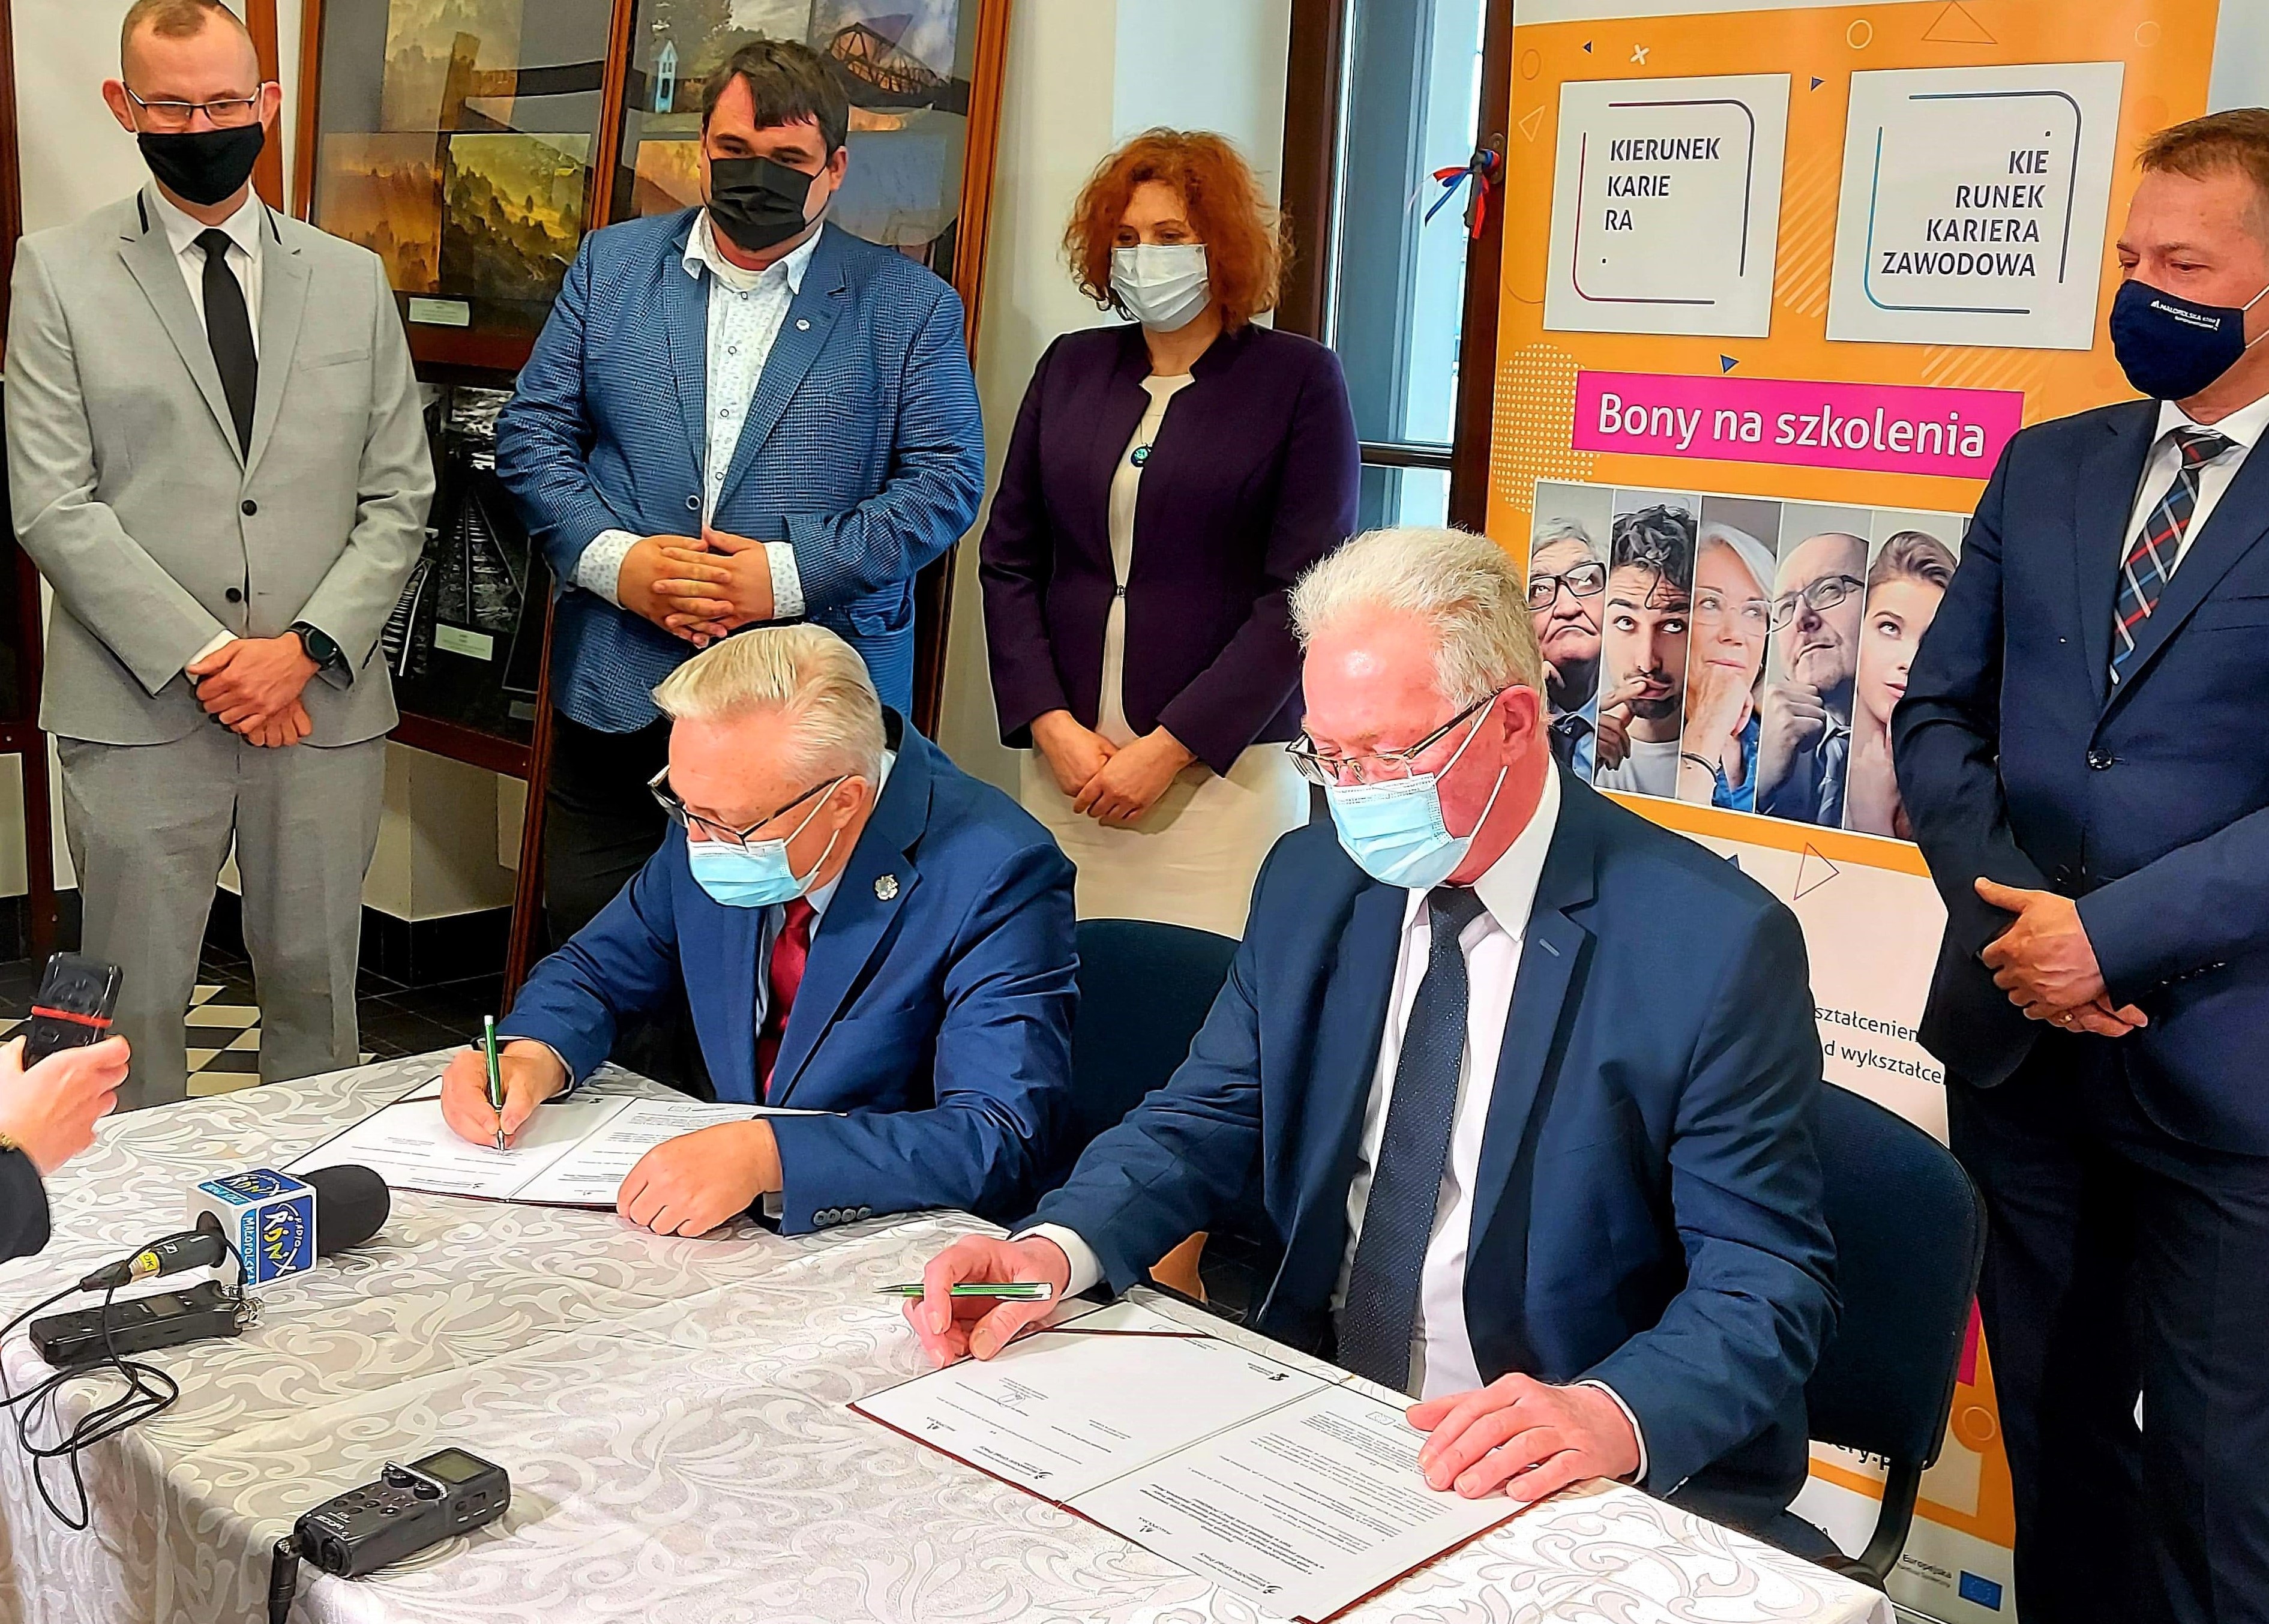 na zdjęciu są osoby które w ręce trzymają długopis i podpisują dokument-porozumienie, siedzą przy stole, po lewej stronie siedzi starszy szpakowaty mężczyzna w okularach, ubrany  jest w garnitur i czerwony krawat, a po prawej stronie siedzi też mężczyzna szpakowaty w okularach, ubrany w garnitur i granatowy  krawat.